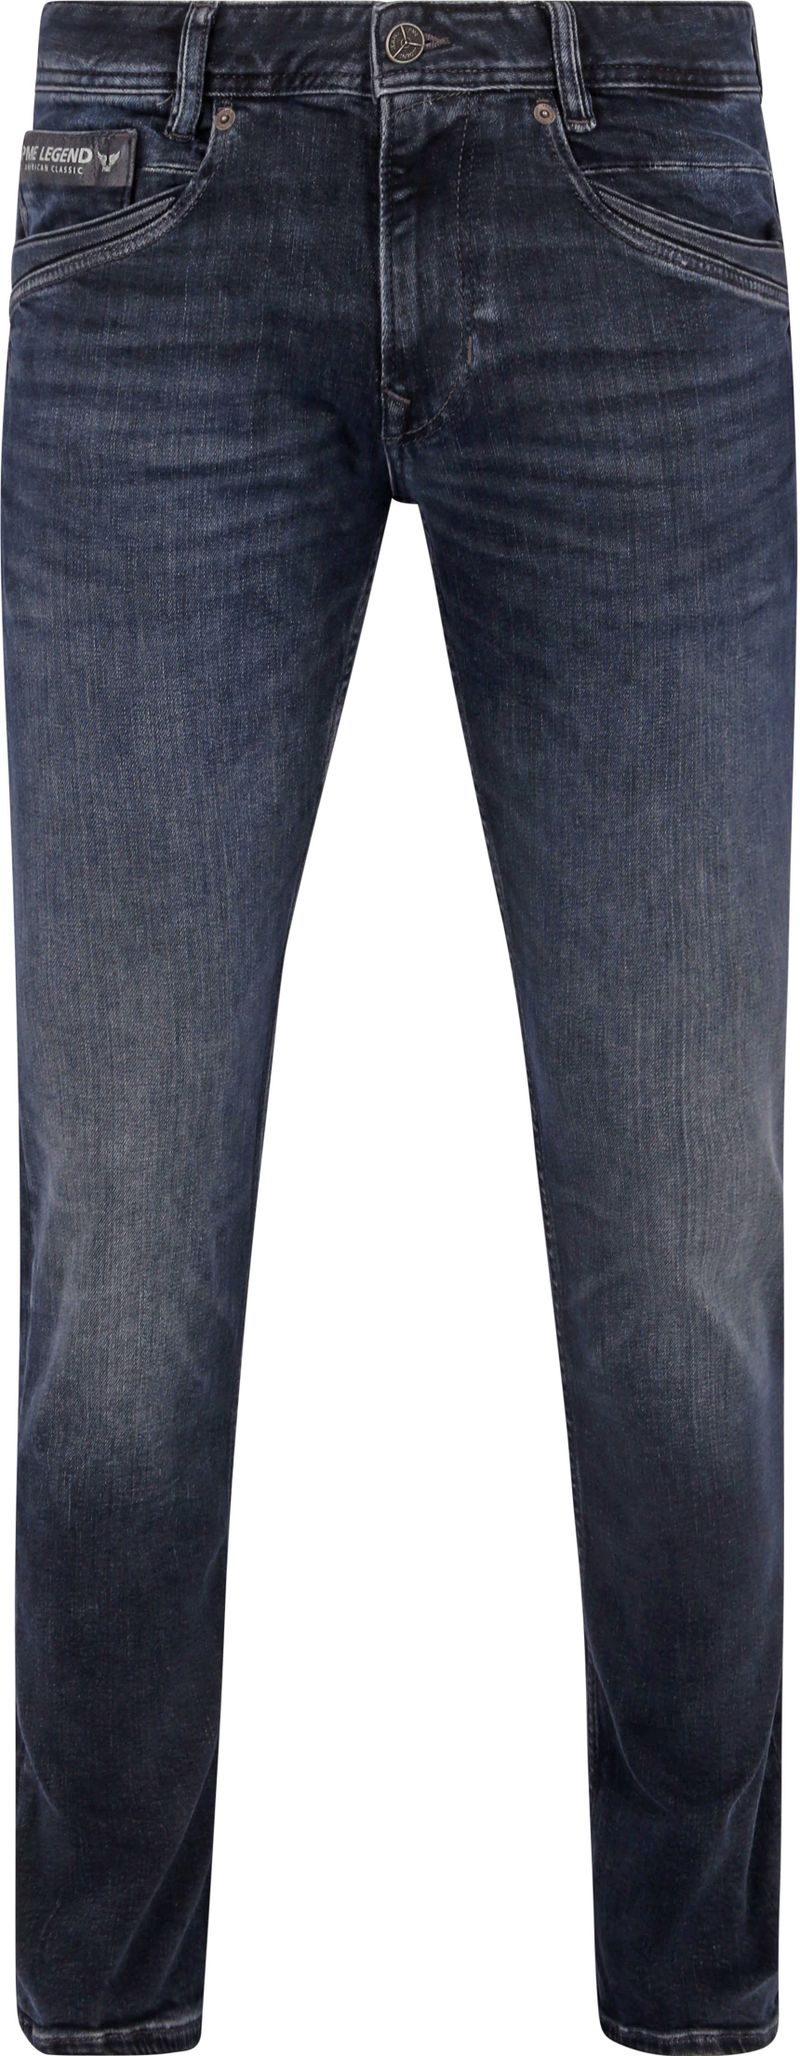 PME Legend Skyrak Jeans Blau DII - Größe W 35 - L 36 günstig online kaufen